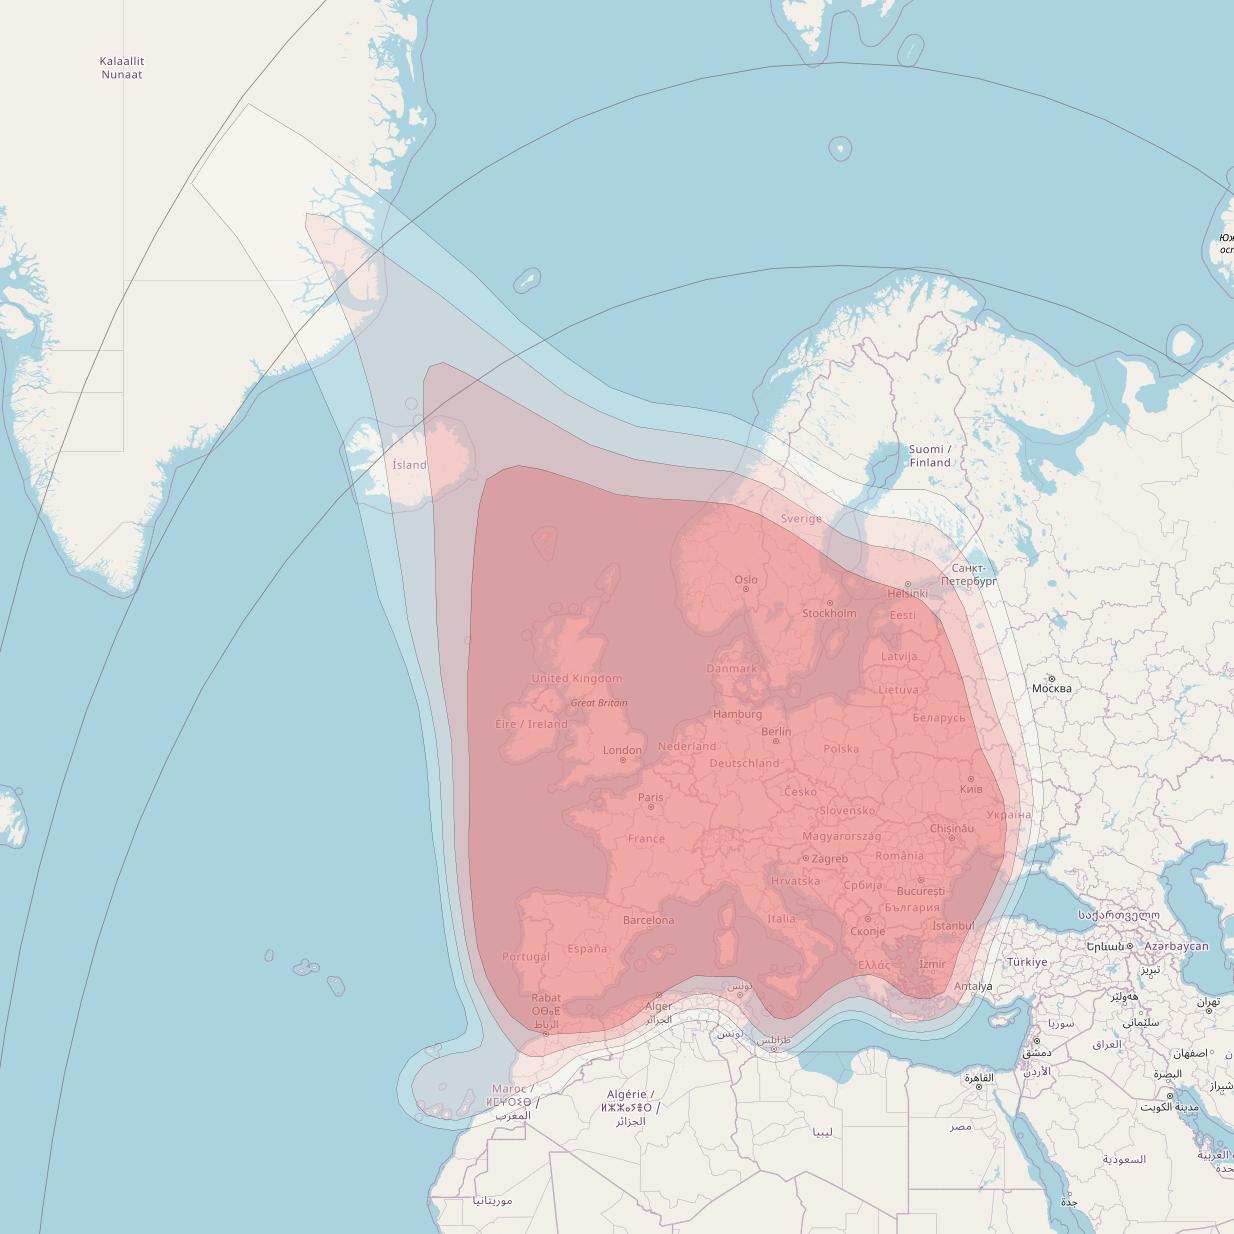 Astra 1N at 19° E downlink Ku-band Pan-European beam coverage map